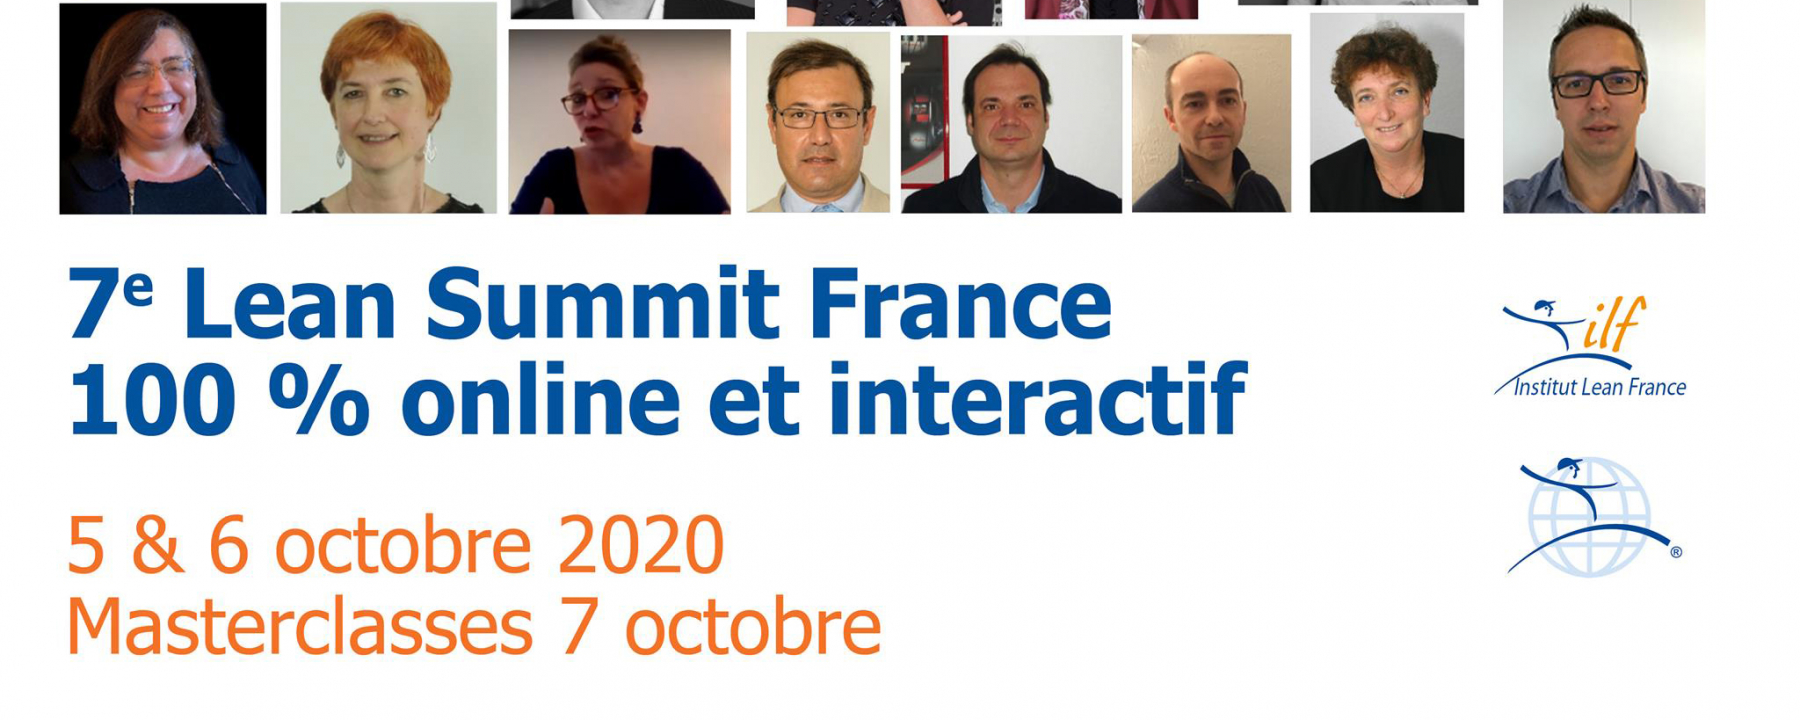 Salon digital Online Lean Summit France , les 5 et 6 octobre 2020, organisé par l'Institut Lean France 